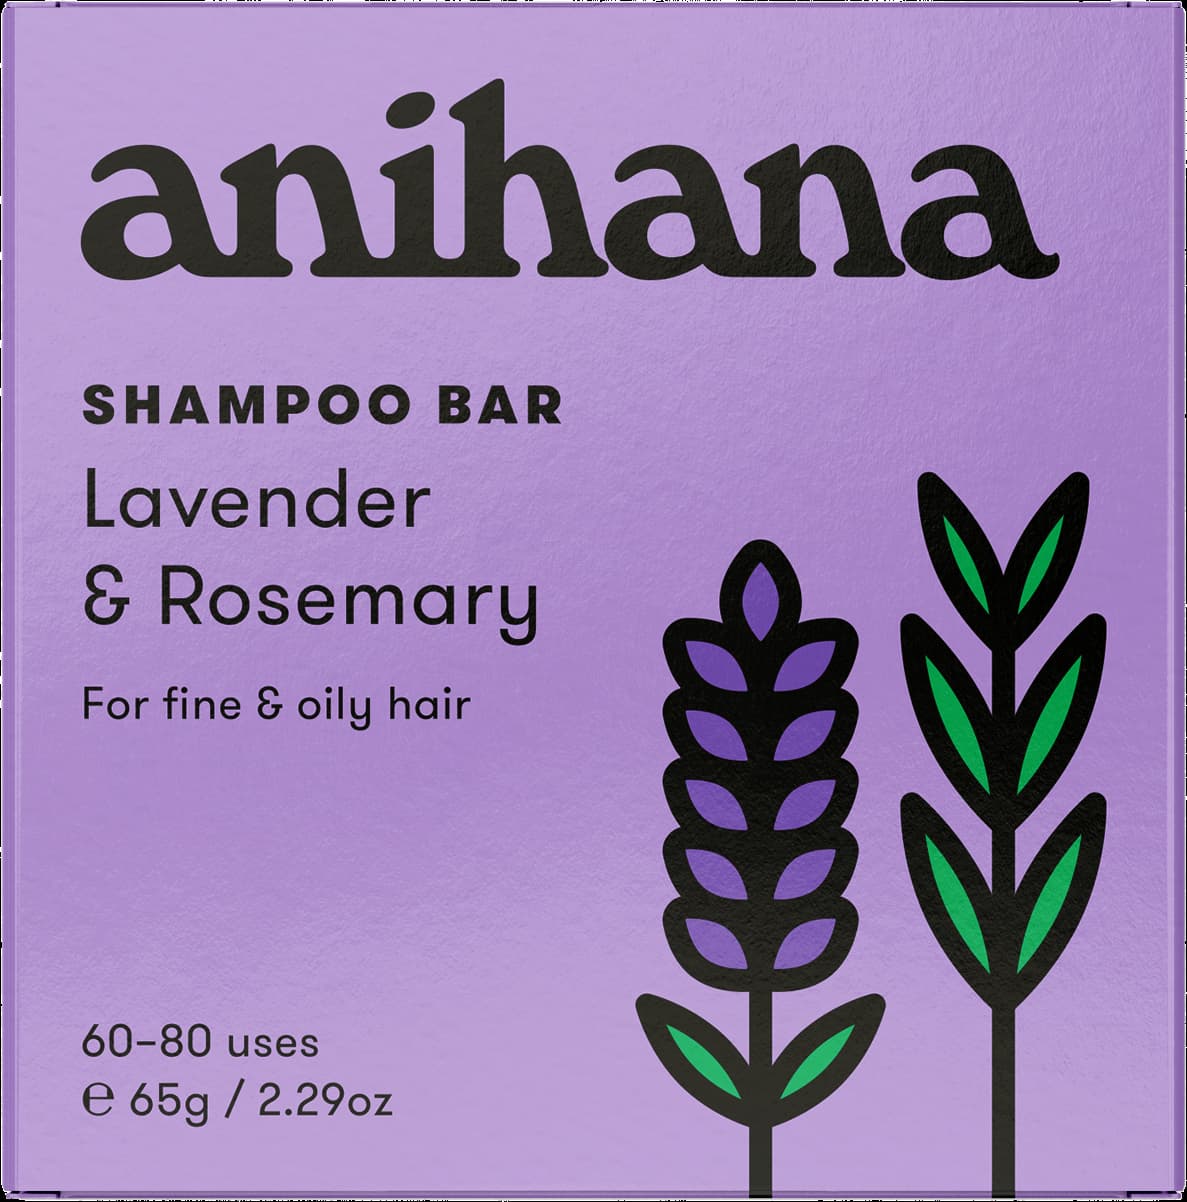 Anihana-shampoo-lavender-and-rosemary-fine-and-oily-hair-65g